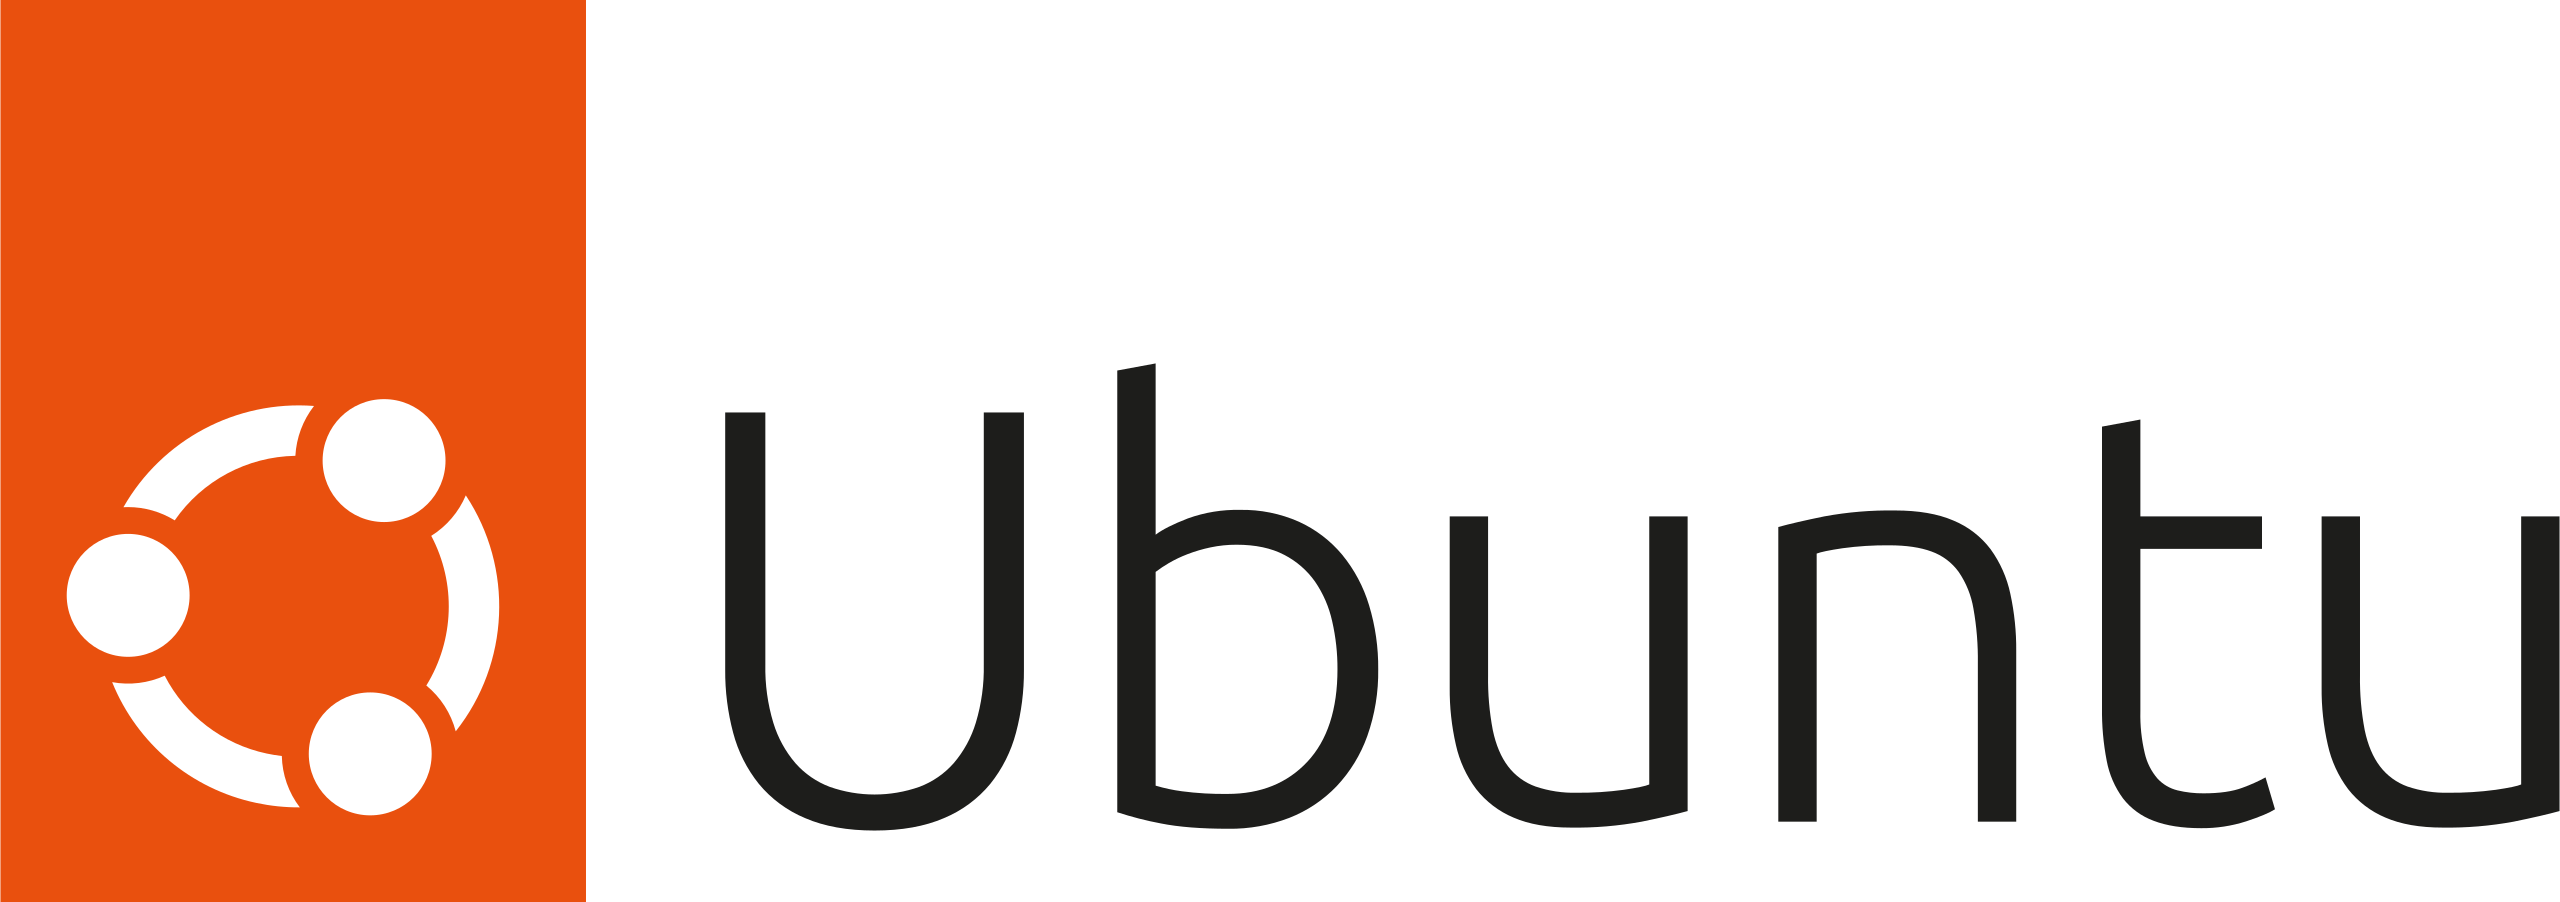 Ubuntu Operating System logo for VPS